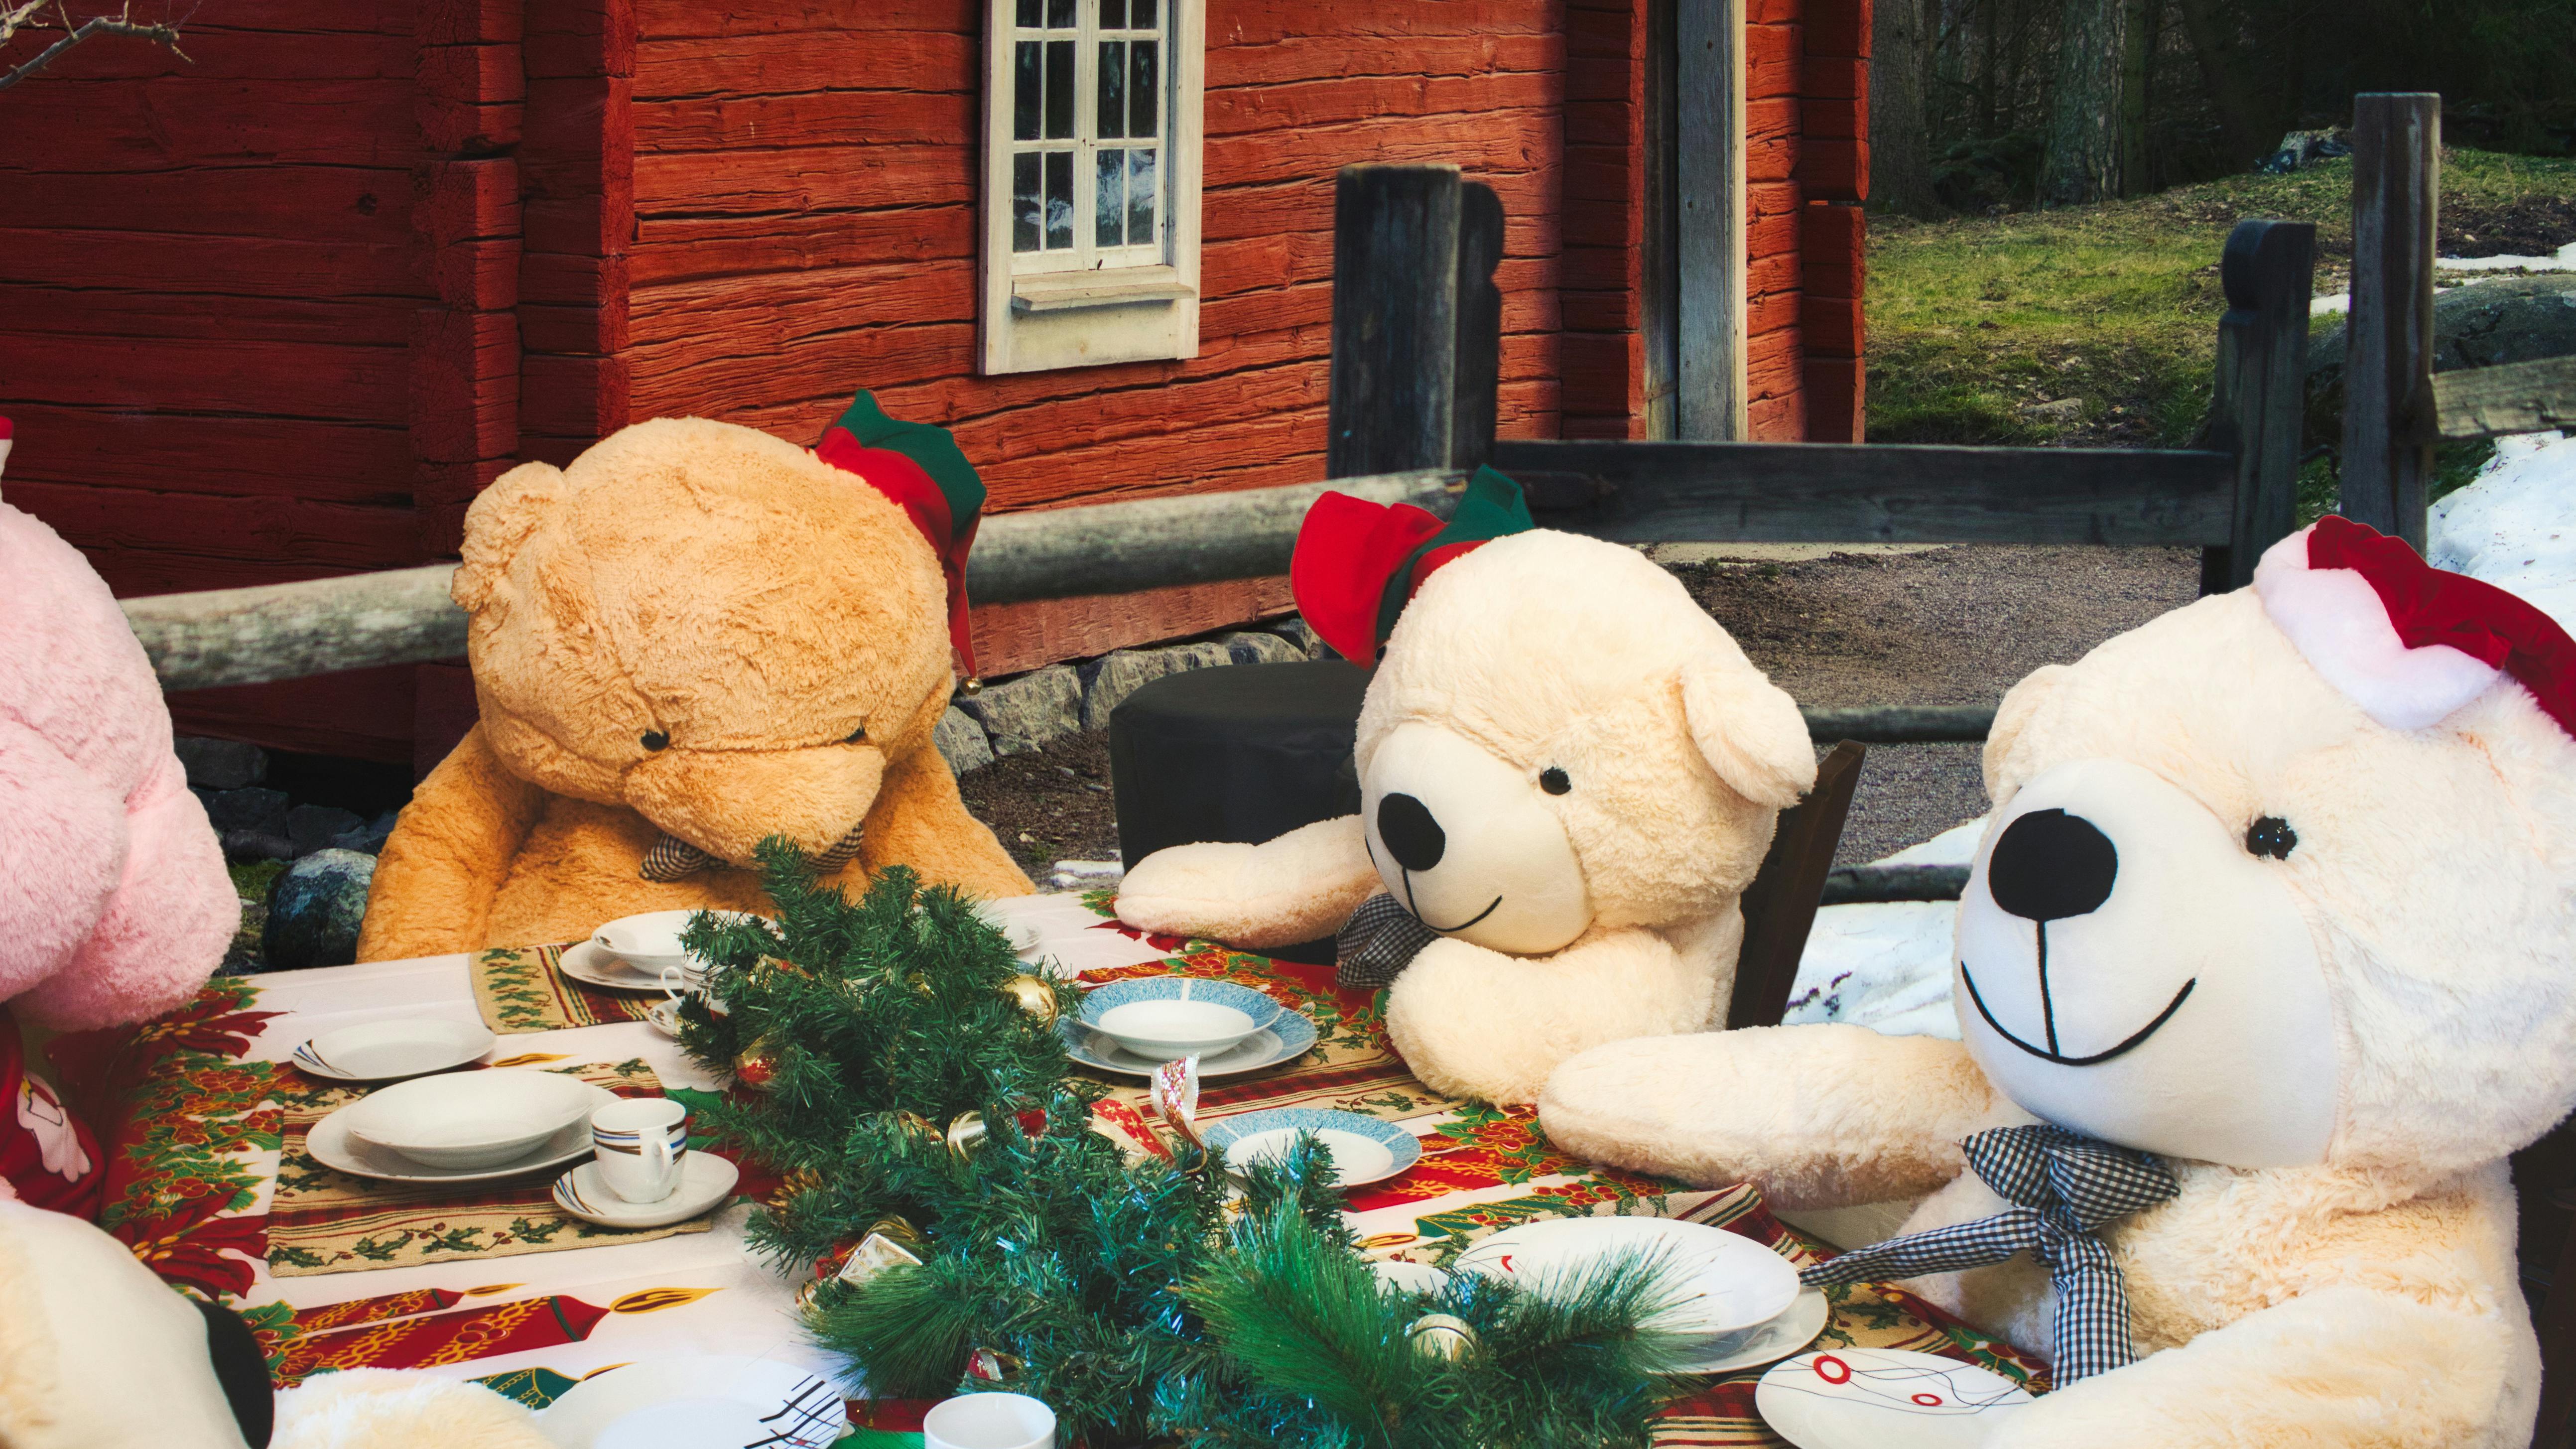 Fire bamser sidder omkring et flot dækket julebord